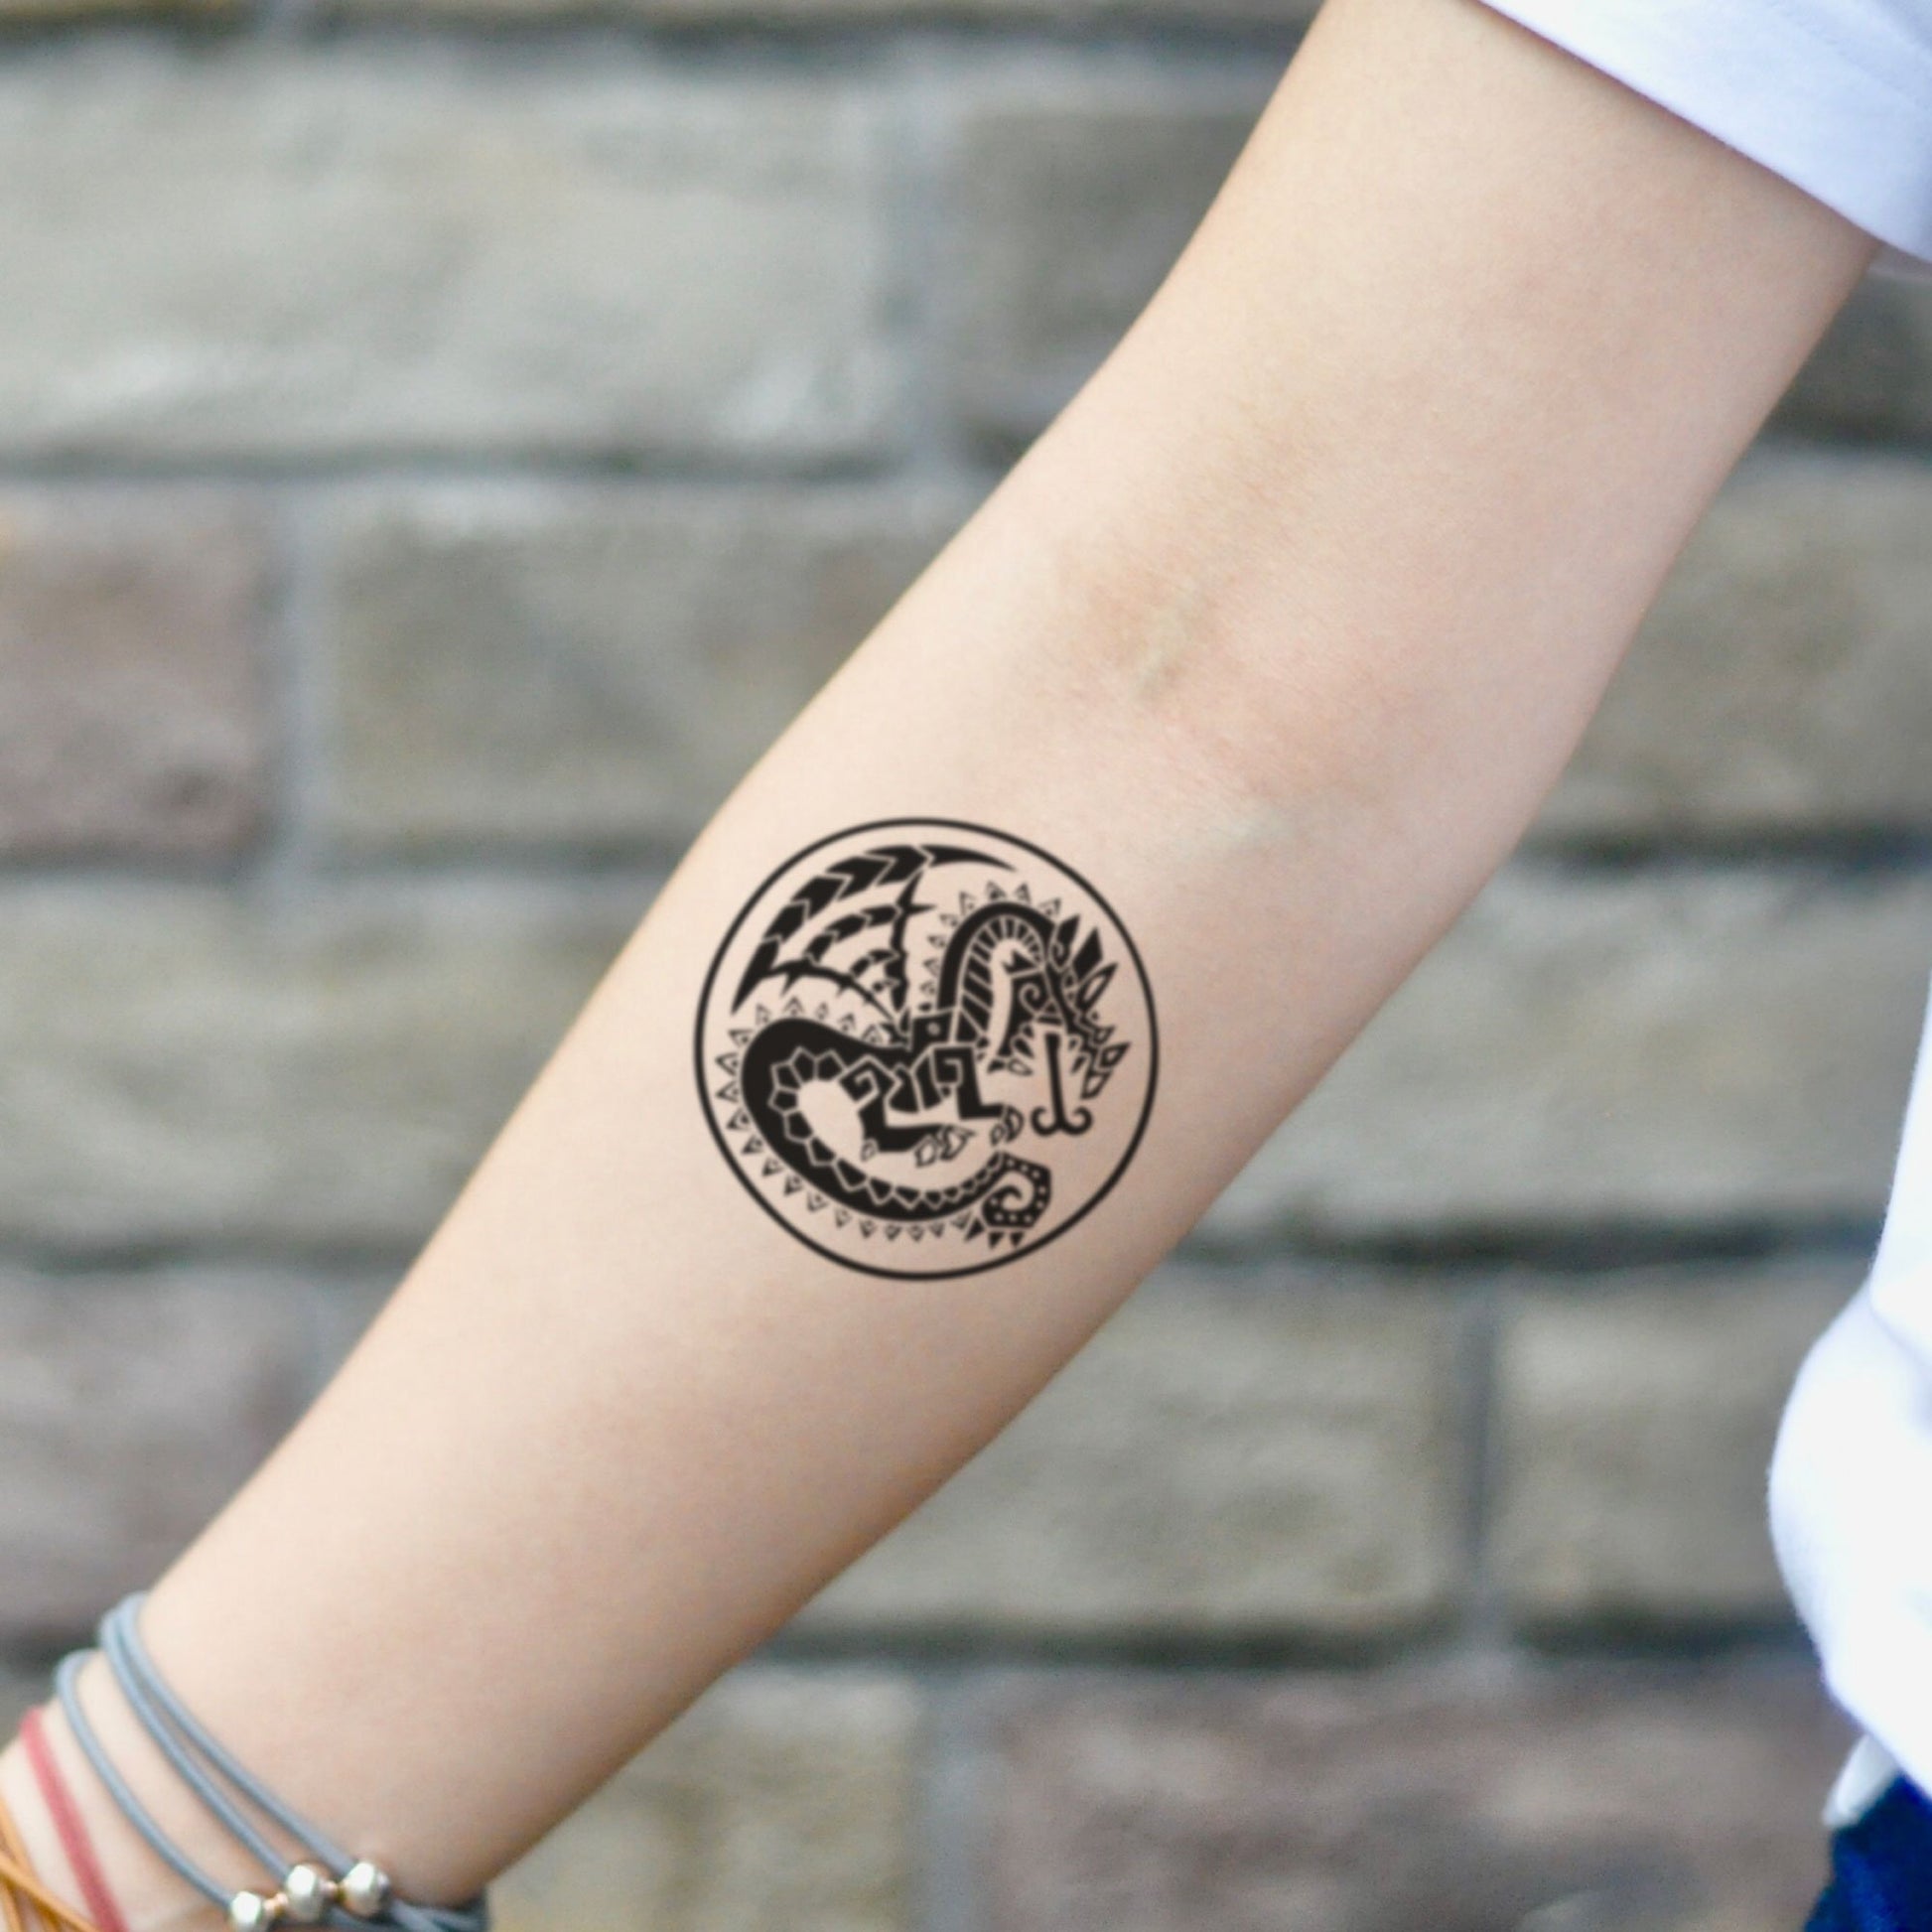 fake small monster hunter illustrative temporary tattoo sticker design idea on inner arm